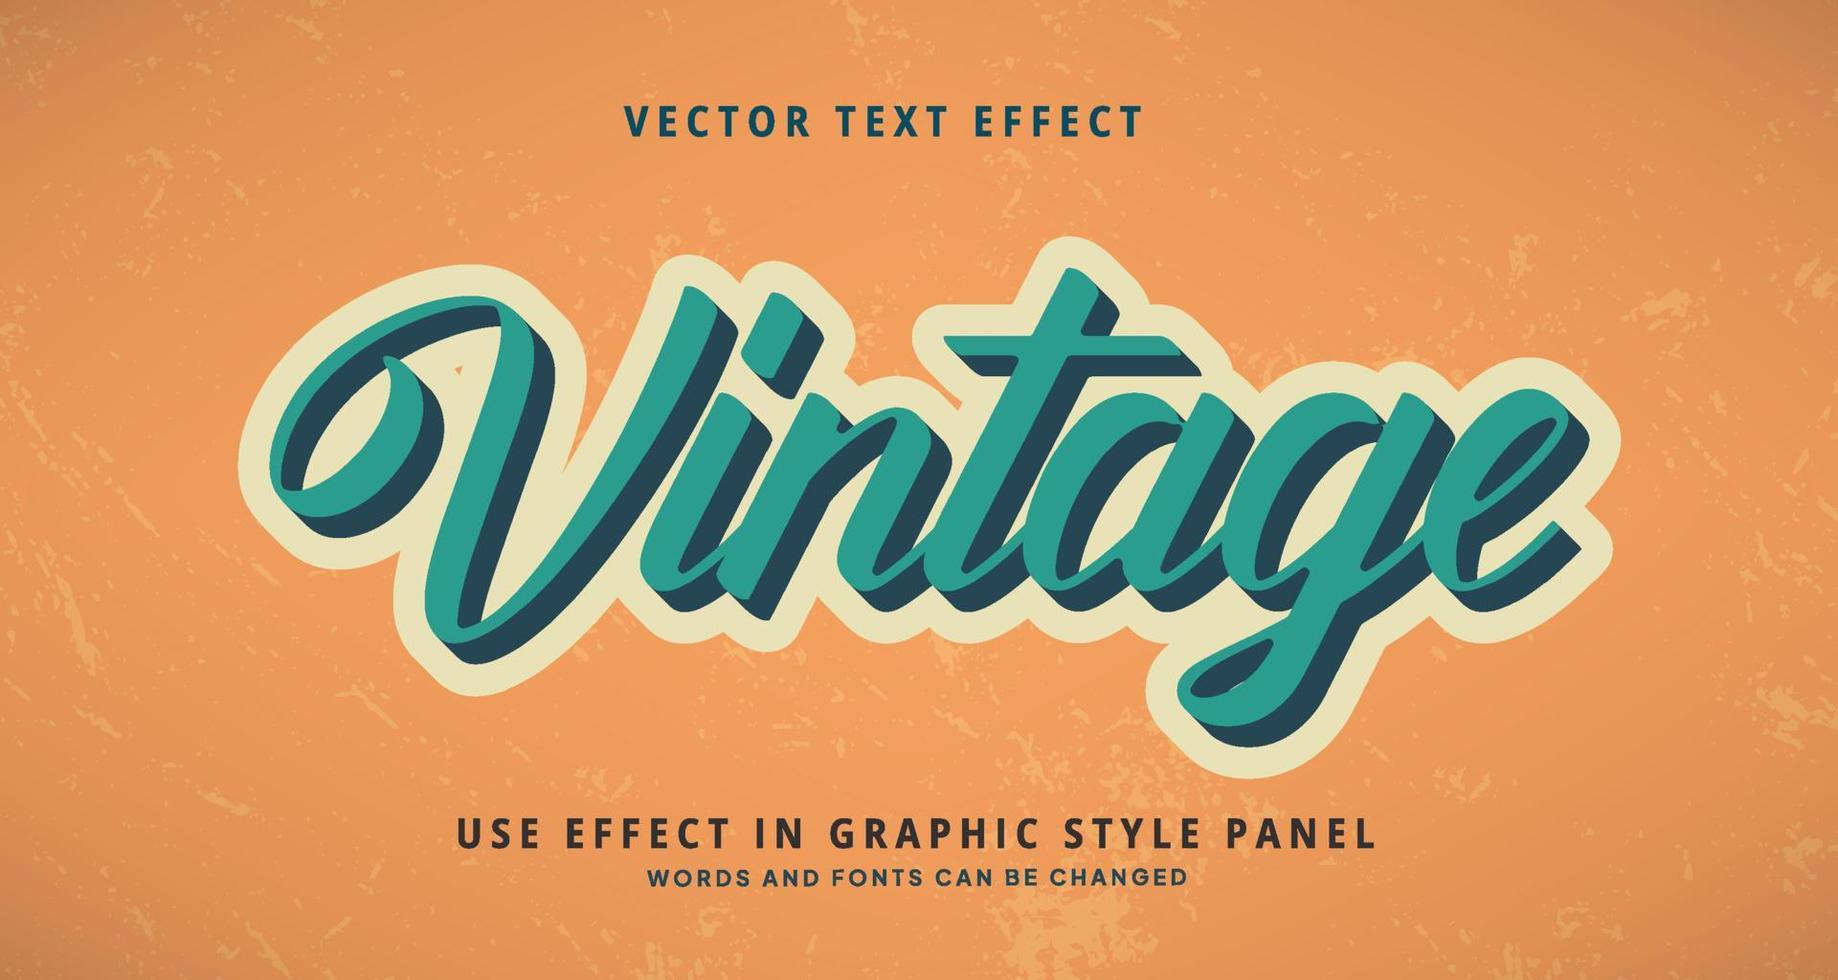 efecto de texto editable estilo vintage vector